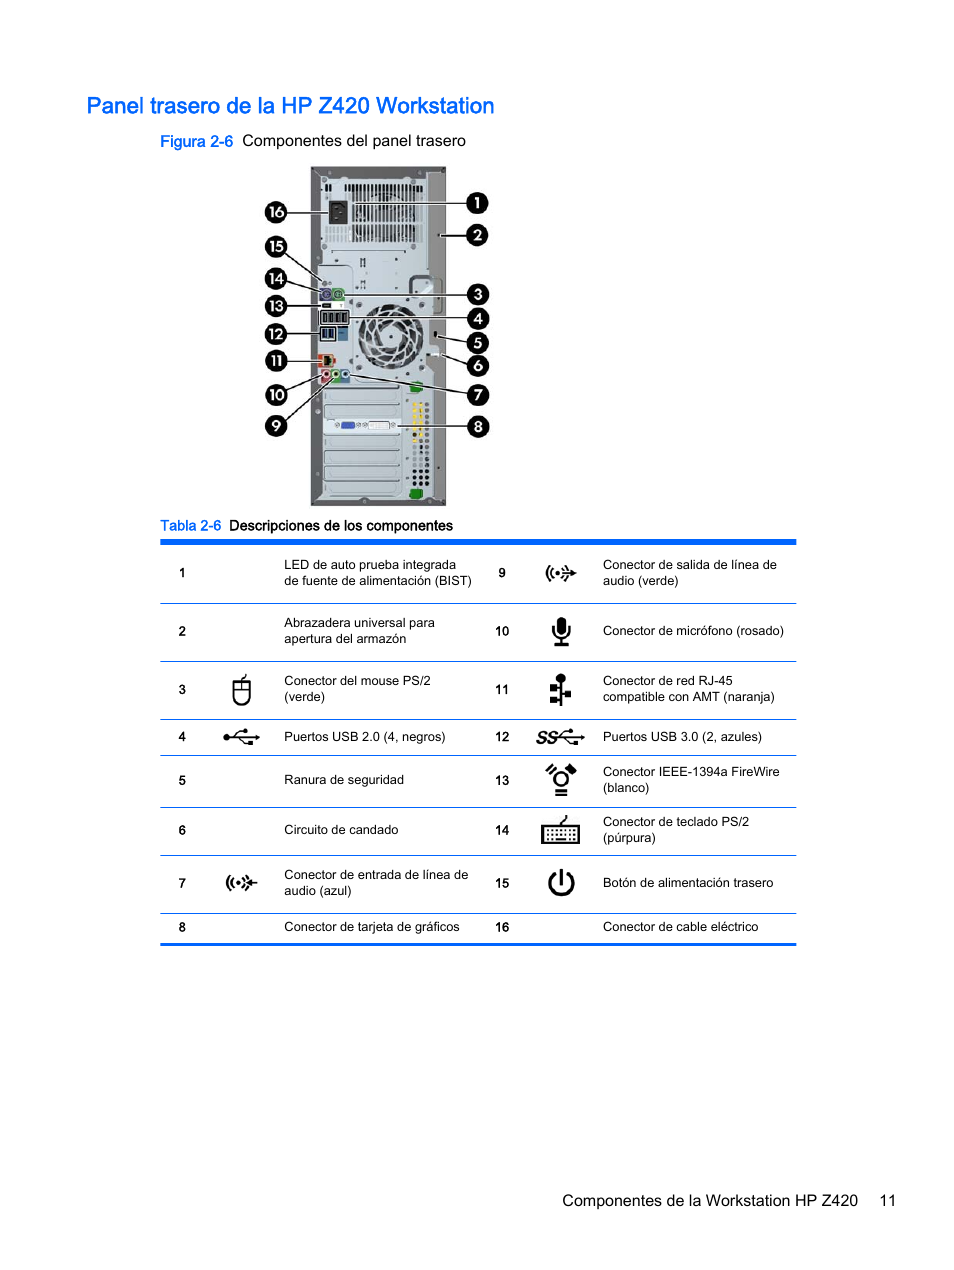 Panel trasero de la hp z420 workstation, Figura 2-6 componentes del panel trasero | HP Estación de trabajo HP Z820 Manual del usuario | Página 19 / 61